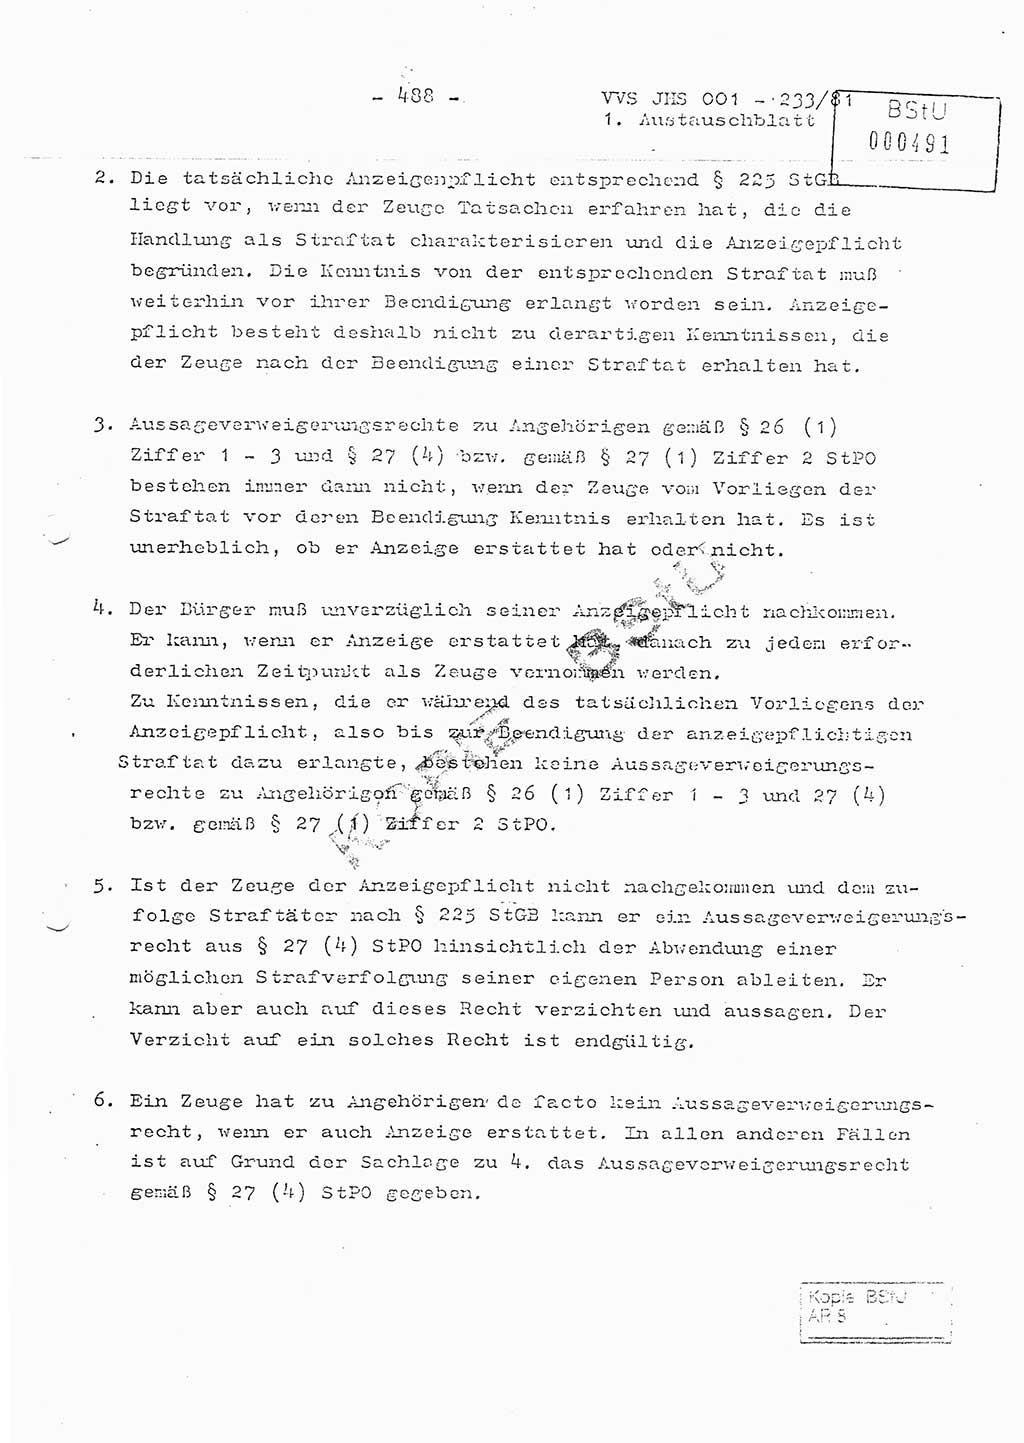 Dissertation Oberstleutnant Horst Zank (JHS), Oberstleutnant Dr. Karl-Heinz Knoblauch (JHS), Oberstleutnant Gustav-Adolf Kowalewski (HA Ⅸ), Oberstleutnant Wolfgang Plötner (HA Ⅸ), Ministerium für Staatssicherheit (MfS) [Deutsche Demokratische Republik (DDR)], Juristische Hochschule (JHS), Vertrauliche Verschlußsache (VVS) o001-233/81, Potsdam 1981, Blatt 488 (Diss. MfS DDR JHS VVS o001-233/81 1981, Bl. 488)